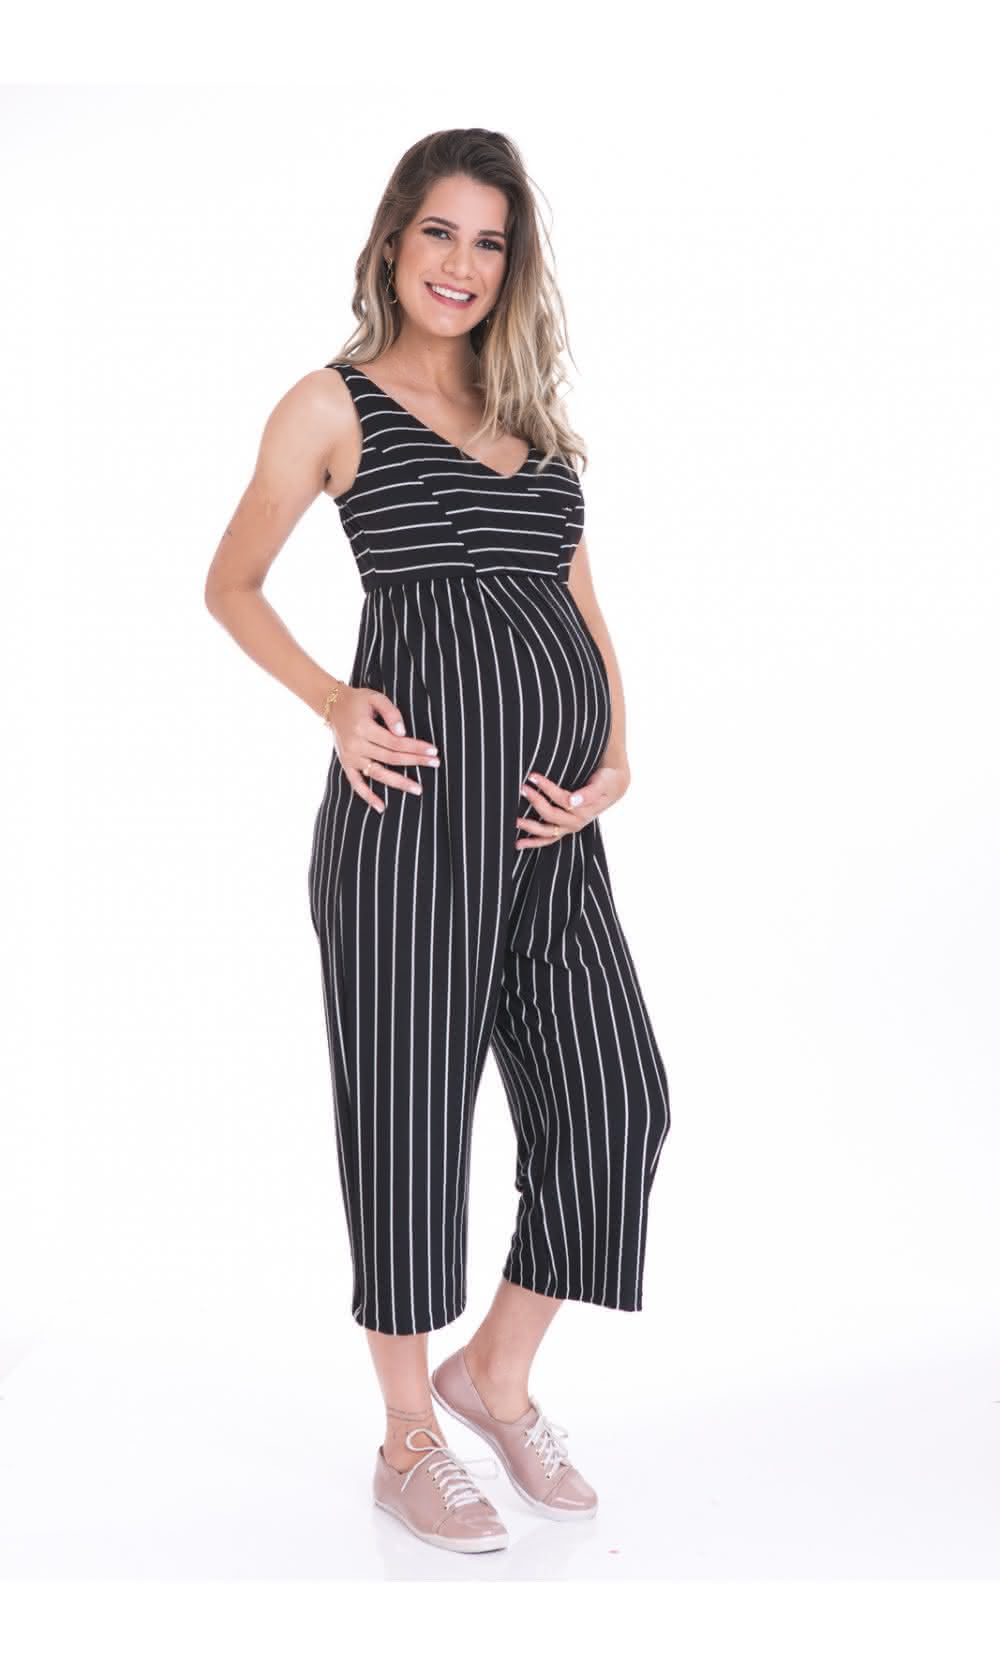 modelos de roupas para grávida